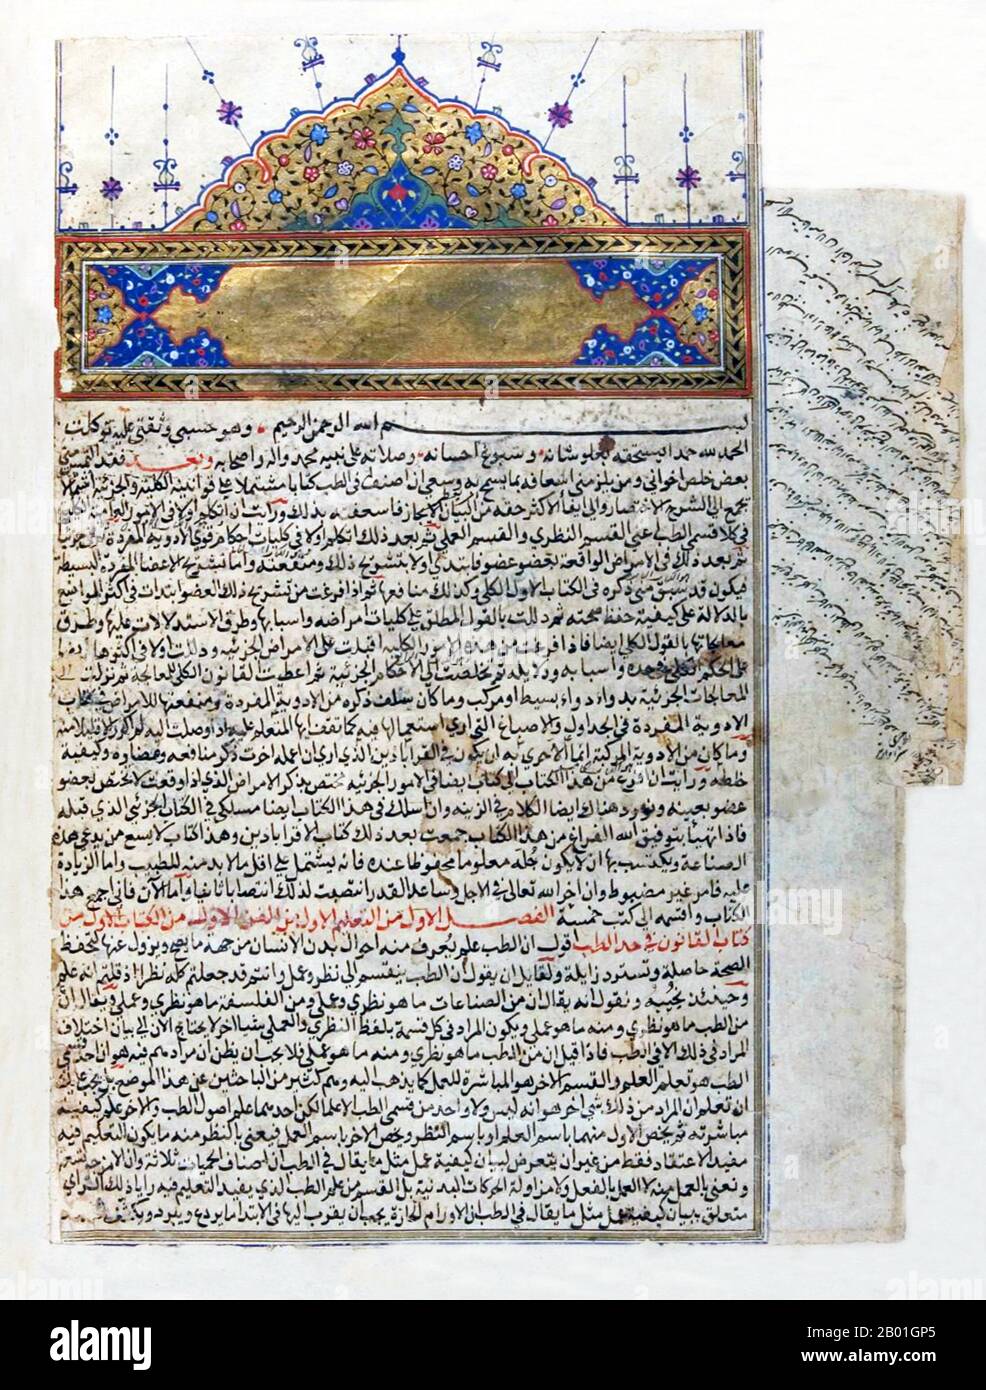 Ouzbékistan/Iran/Perse: Décoration d'ouverture et invocation à Allah d'un manuscrit de 16th siècle du canon d'Ibn Sina (Avicenne), vers 1597-1598. Abū ʿAlī al-Ḥusayn ibn ʿAbd Allāh ibn Sīnā (c. 980-1037), communément appelé Ibn Sīnā ou par son nom latinisé Avicenne, était un polymath persan, qui a écrit près de 450 traités sur un large éventail de sujets, dont environ 240 ont survécu. En particulier, 150 de ses traités survivants se concentrent sur la philosophie et 40 d'entre eux se concentrent sur la médecine. Ses œuvres les plus célèbres sont 'le Livre de guérison', une vaste encyclopédie philosophique et scientifique. Banque D'Images